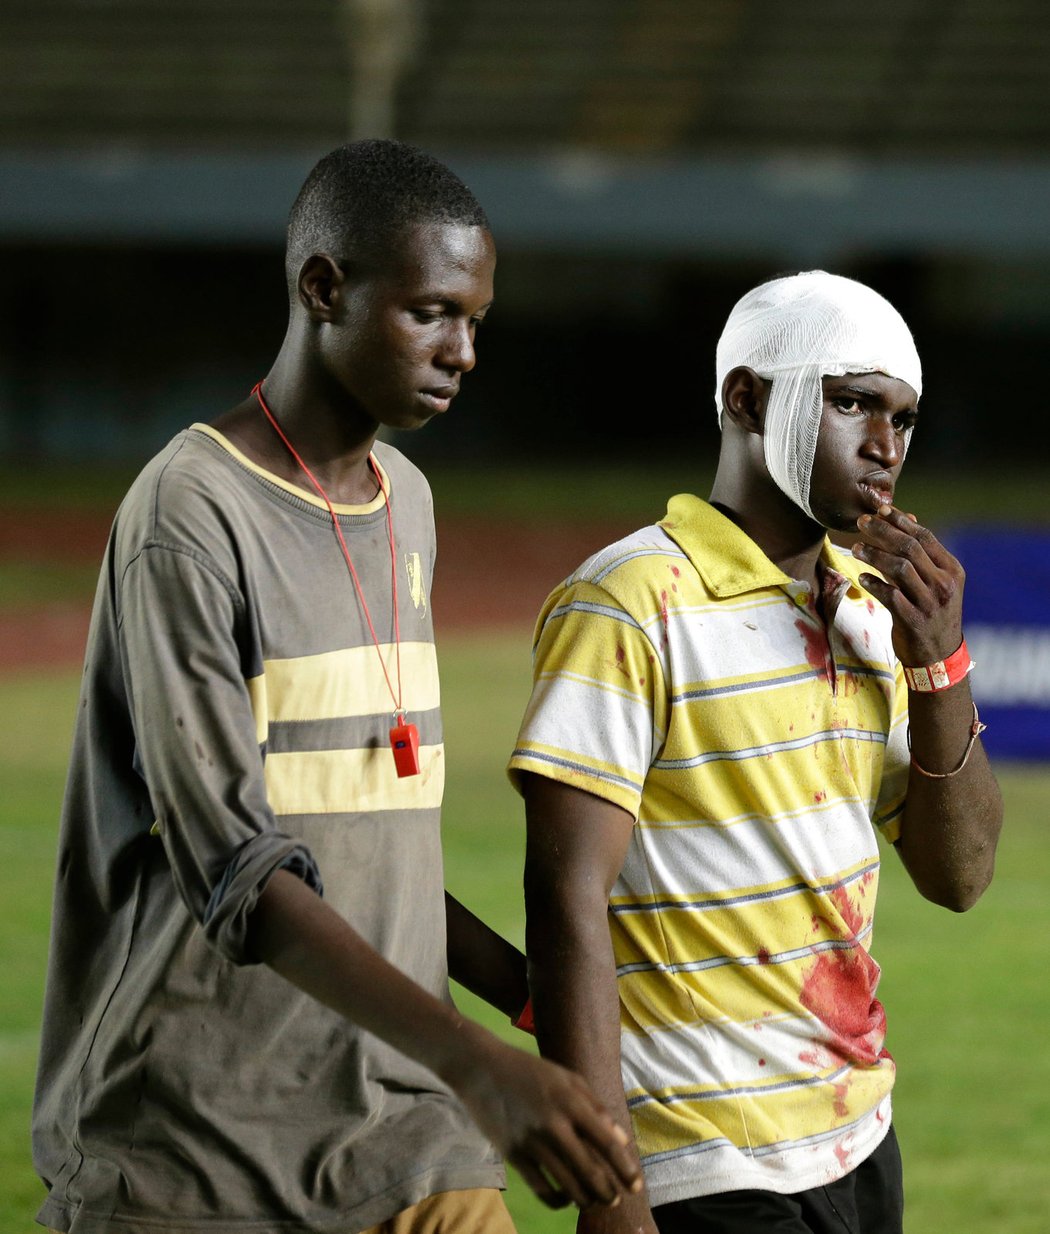 Řádění fanoušků ukončilo předčasně zápas kvalifikace mistrovství Afriky mezi Senegalem a Pobřežím slonoviny. Na plochu létalo všechno možné, tekla krev, v hledišti plály ohně. Policie dav krotila za pomoci slzného plynu. O krvavá zranění nebyla nouze.